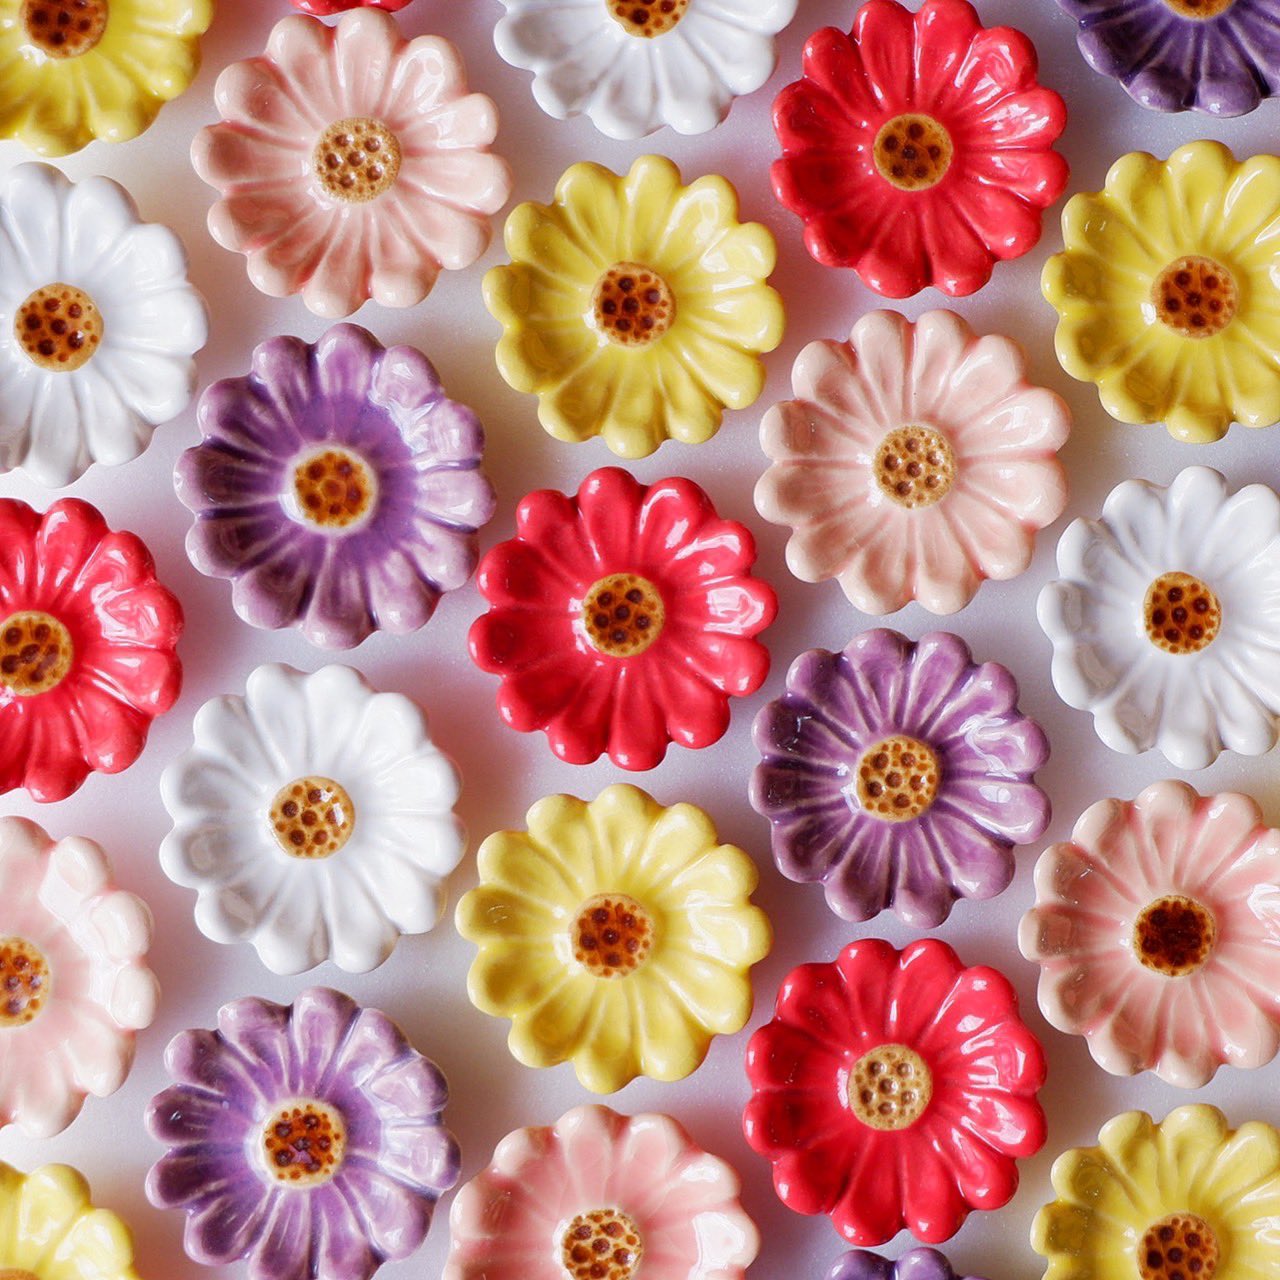 イホシロ窯 マスターズクラフト てづくり箸置き ガーベラシリーズ 究極美 究極の愛 優しさ といった花言葉のガーベラ 中には明るい色の見た目のイメージに反してネガティブな花言葉を持つお花が多くありますが ガーベラの花言葉は